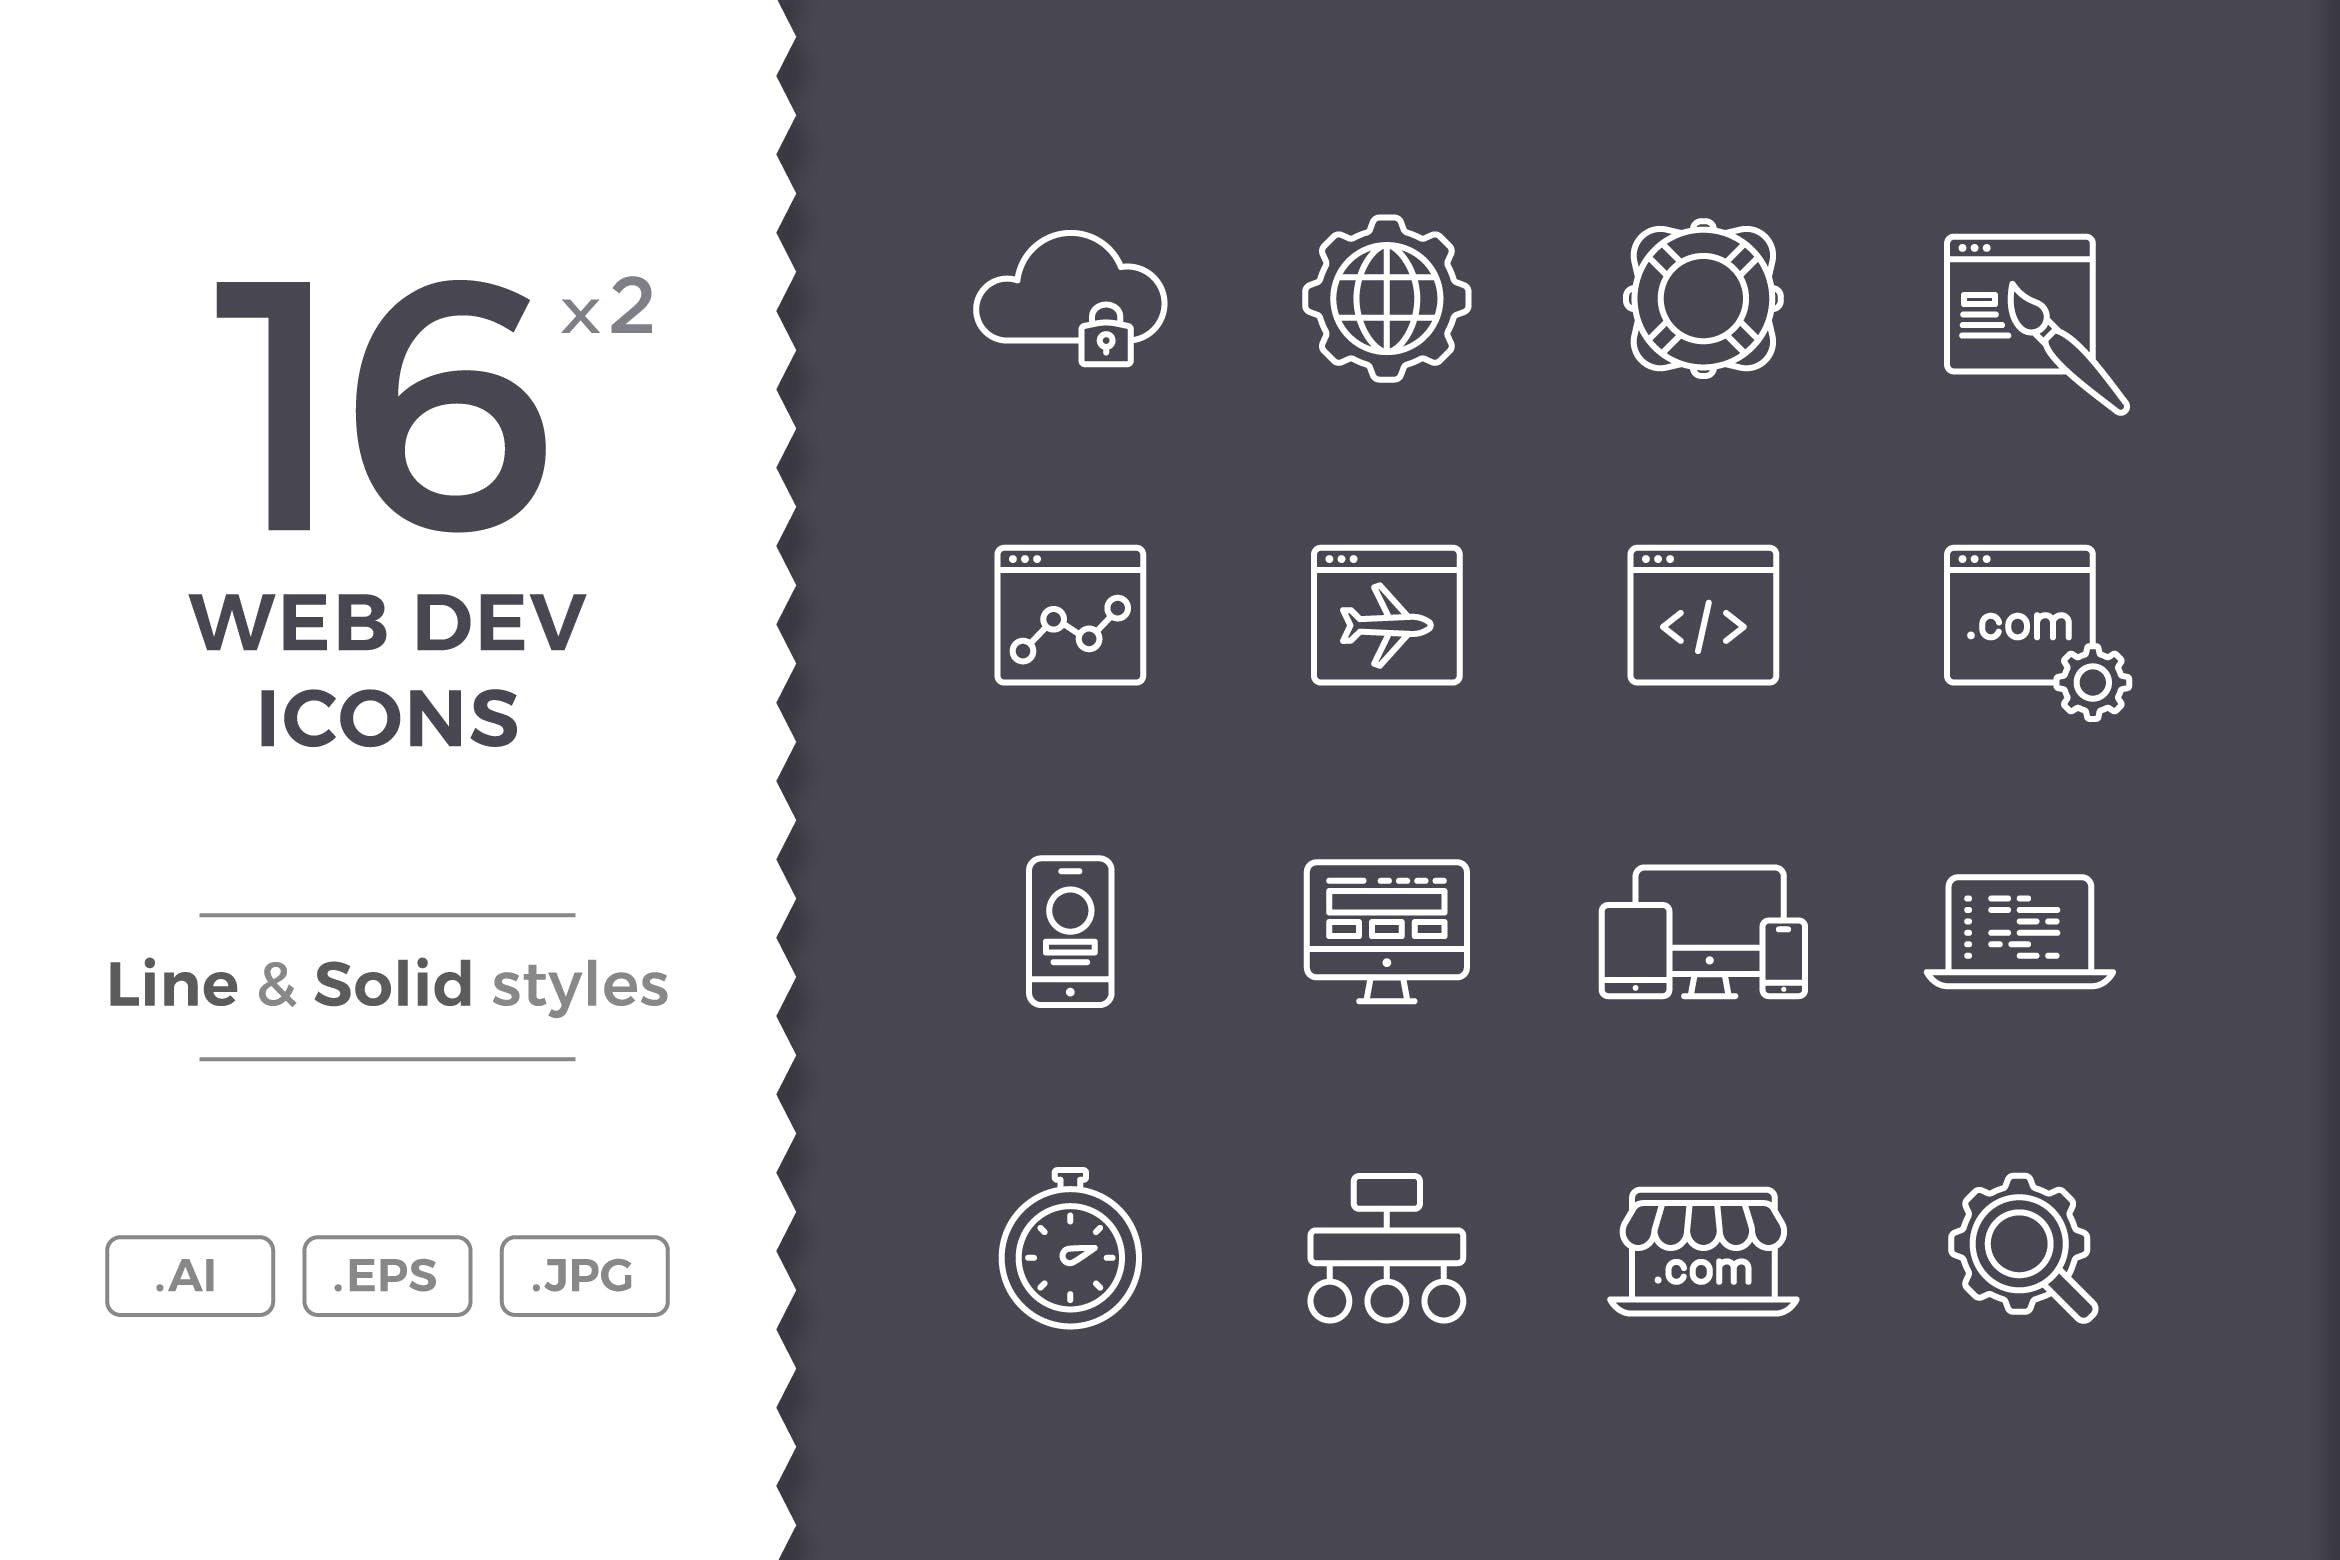 16枚网站开发主题矢量线性＆Solid素材库精选图标 Web Development Icons插图